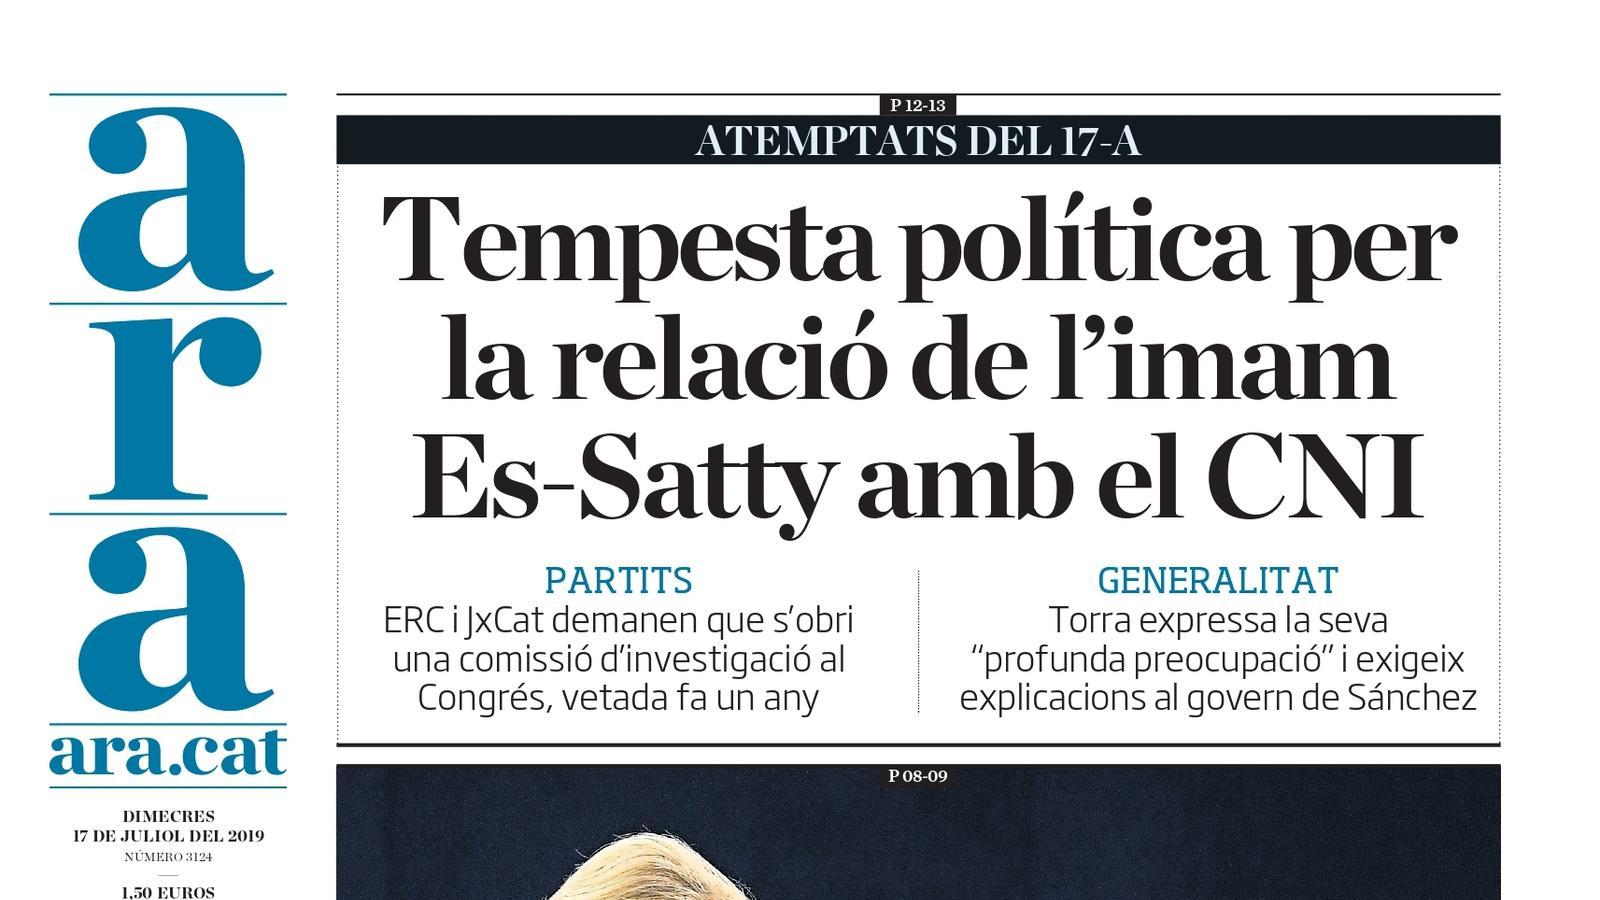 "Tempesta política per la relació de l'imam Es-Satty amb el CNI", la portada de l'ARA